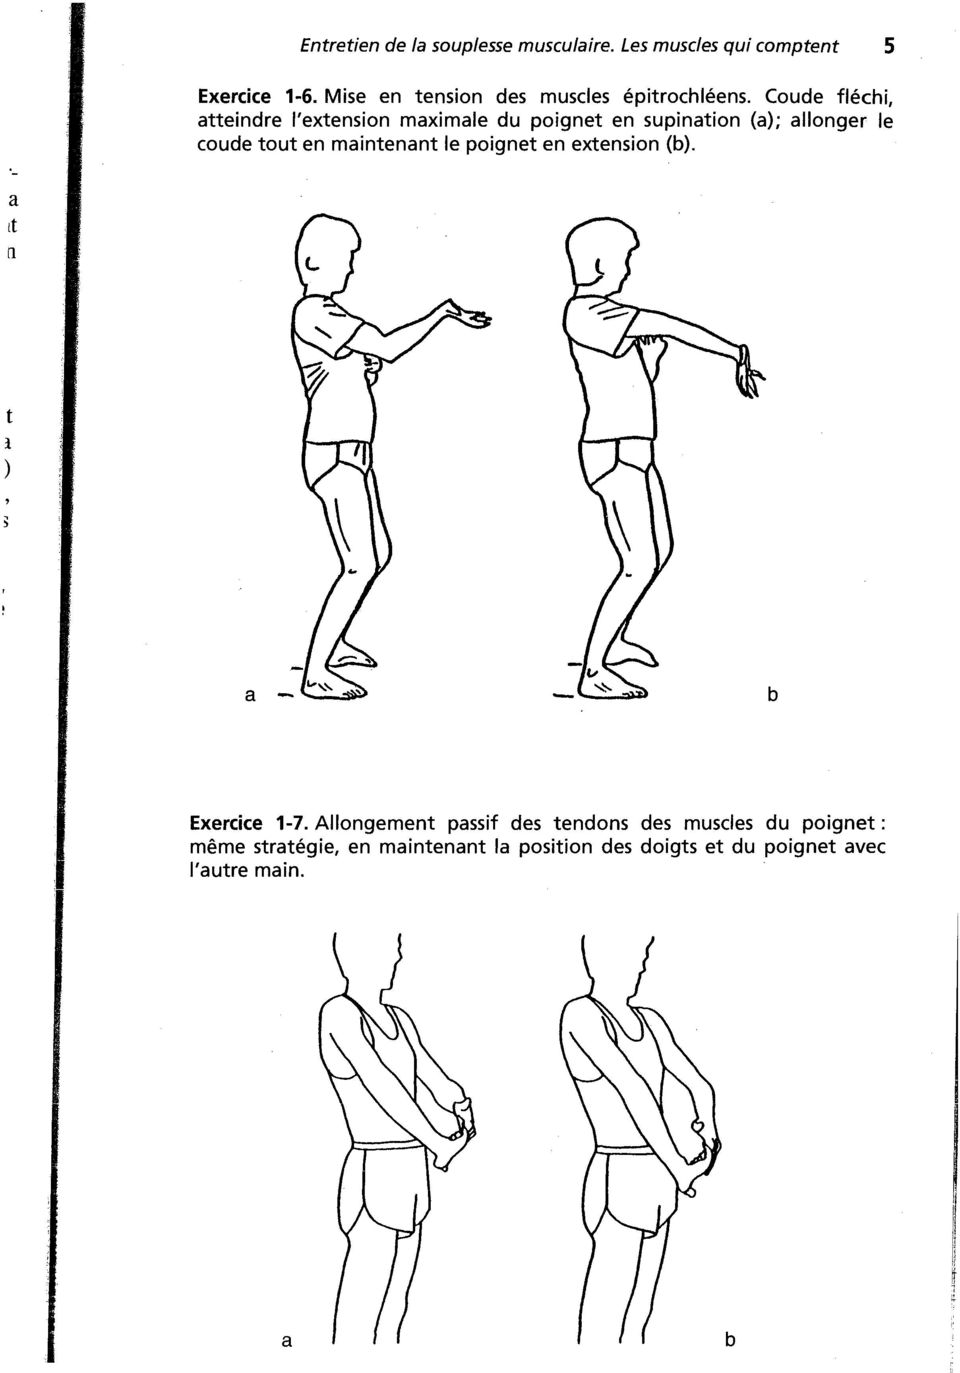 'extension maximale du poignet en supination (a); allonger le oude tout en maintenant le poignet en